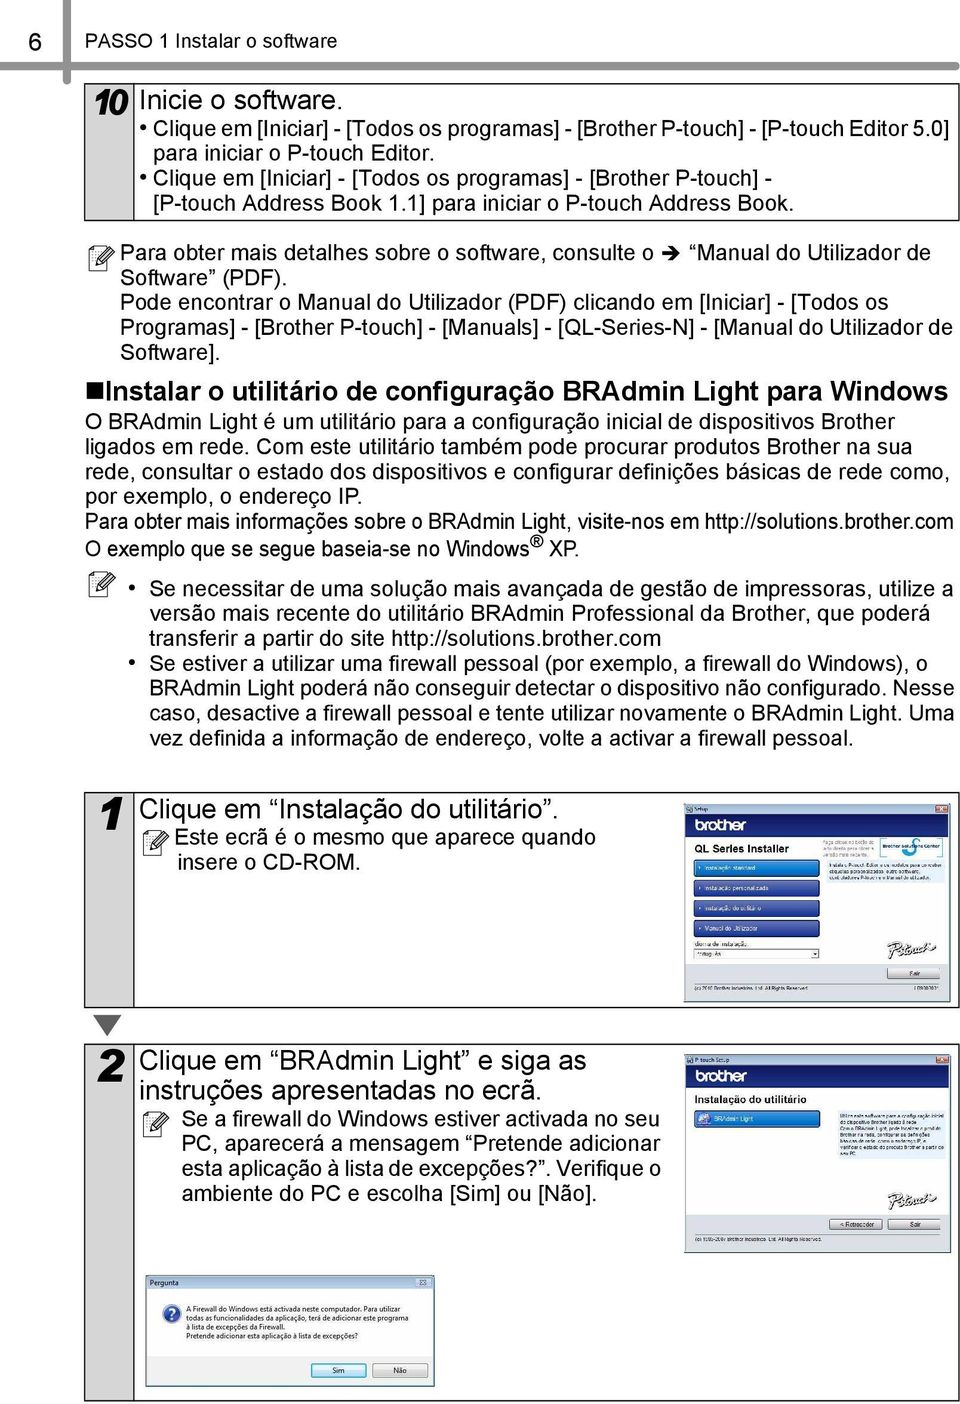 Para obter mais detalhes sobre o software, consulte o Manual do Utilizador de Software (PDF).